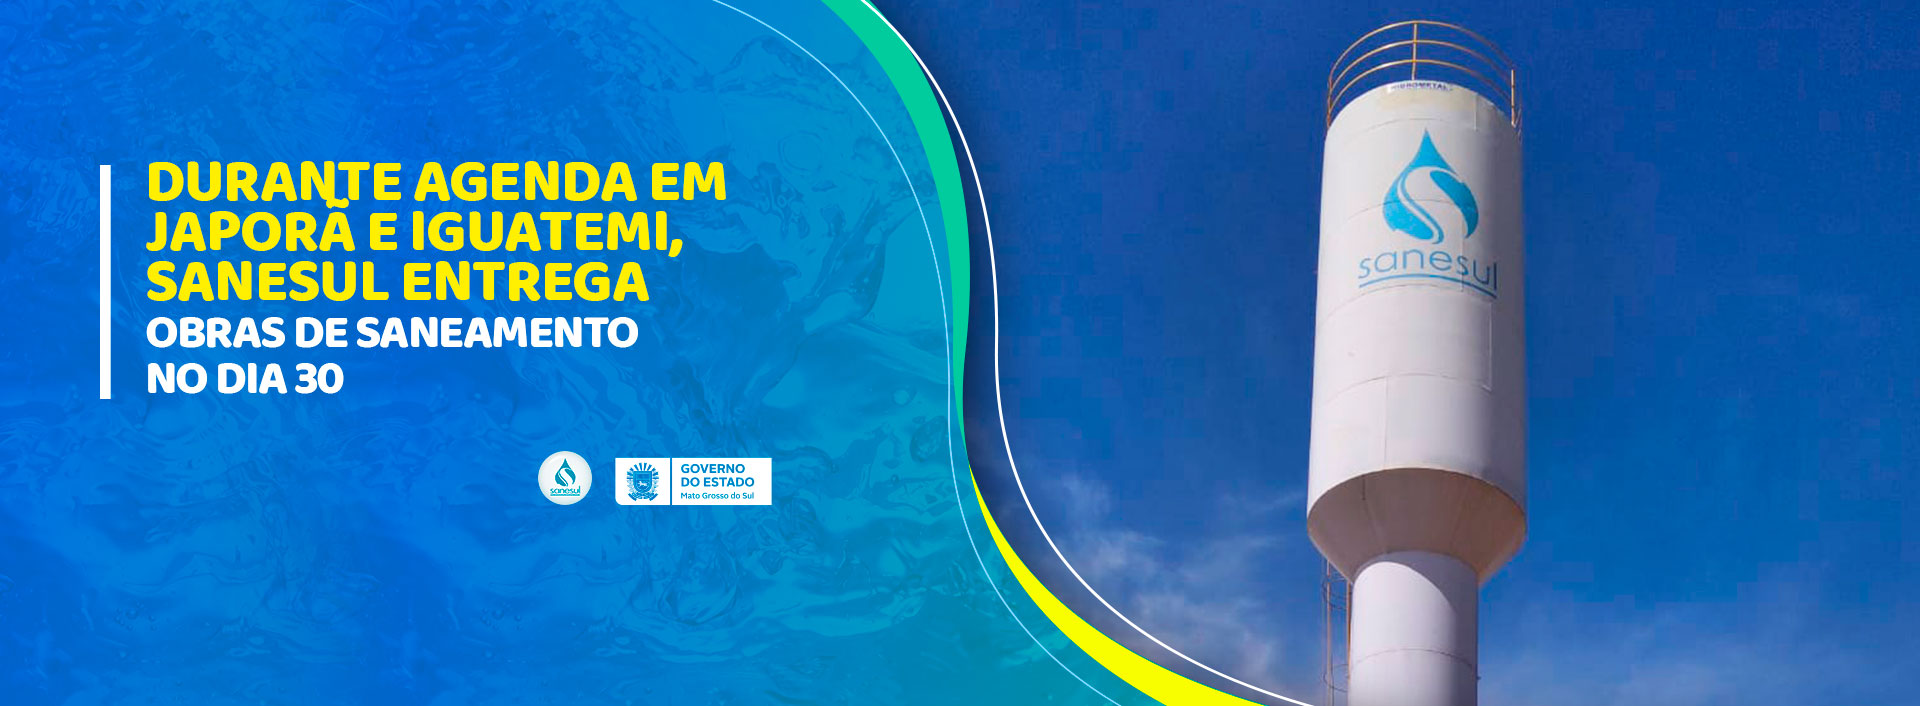 Durante agenda em Japorã e Iguatemi, Sanesul entrega obras de saneamento no dia 30                                                                                                                                                                                                                                                                                                                                                                                                                                  